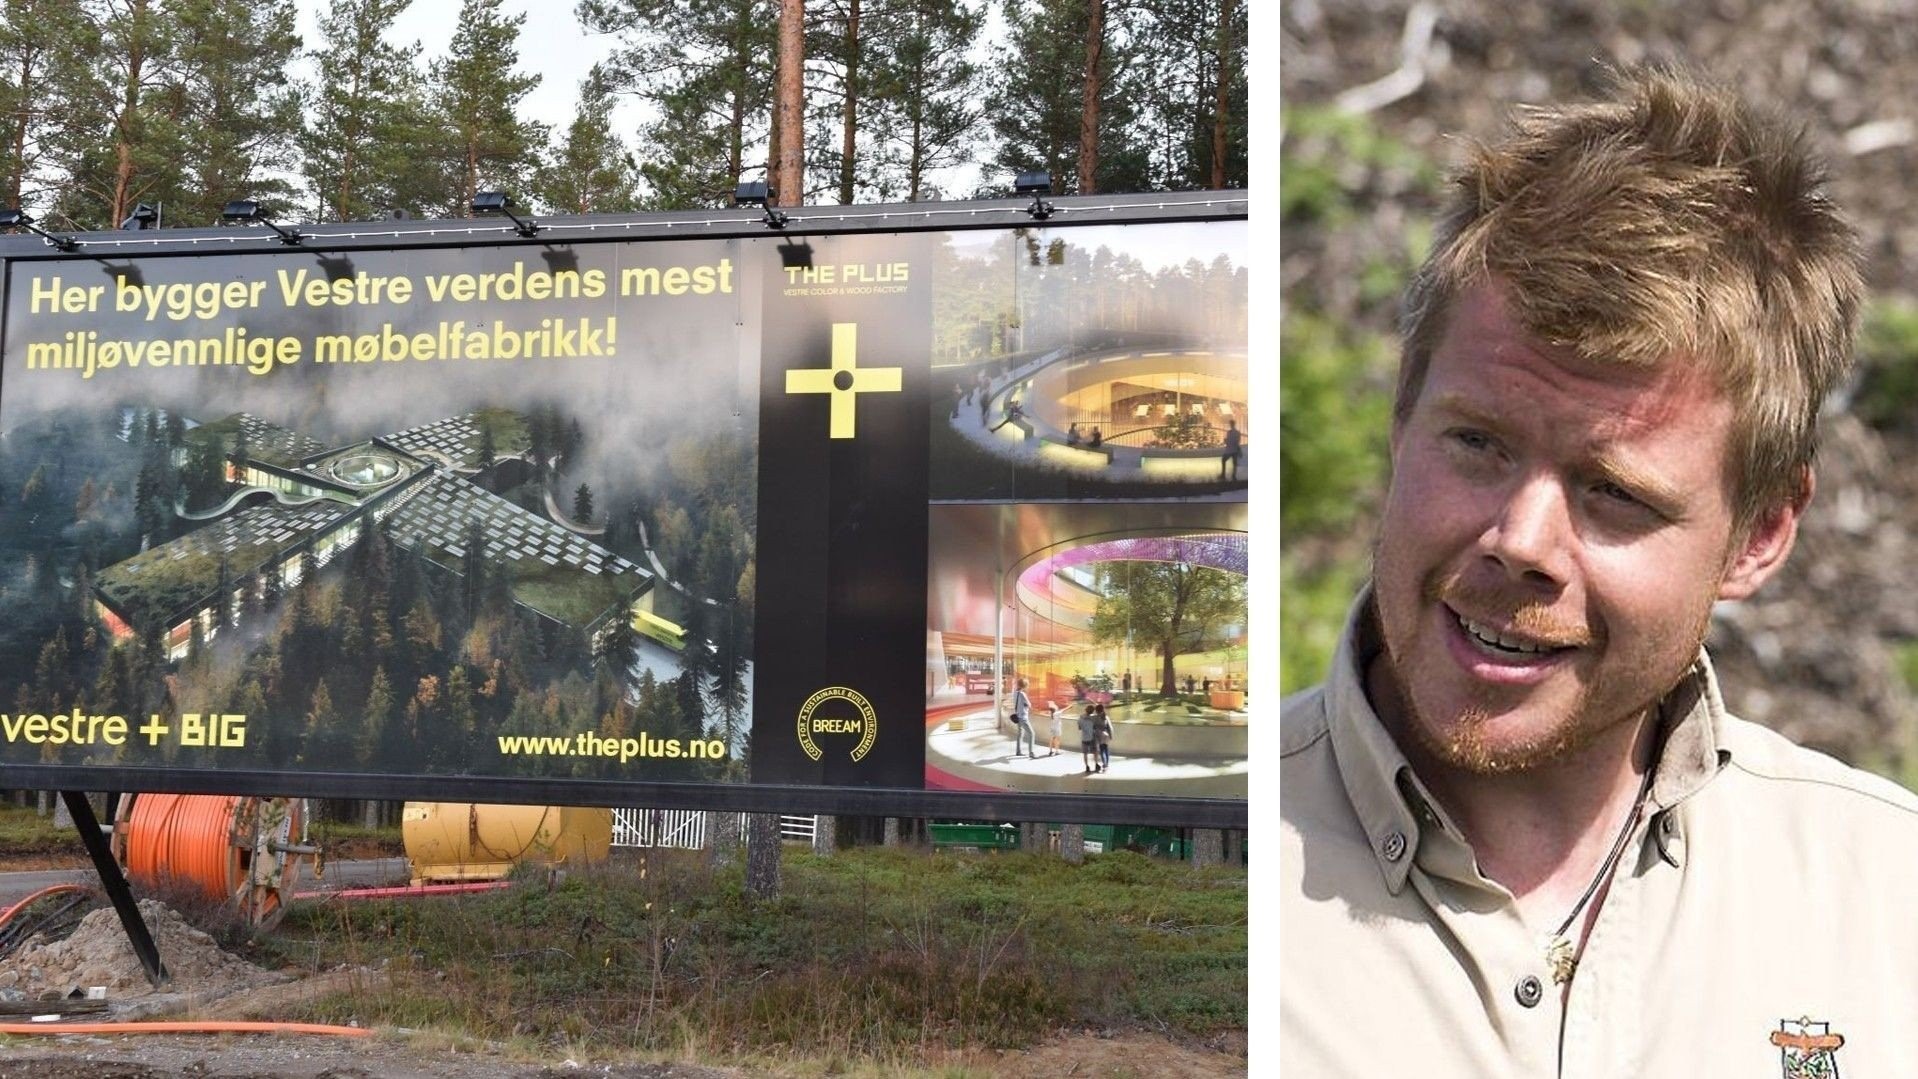 Министр Норвегии строит личный завод: без питьевой воды могут остаться 4500 человек